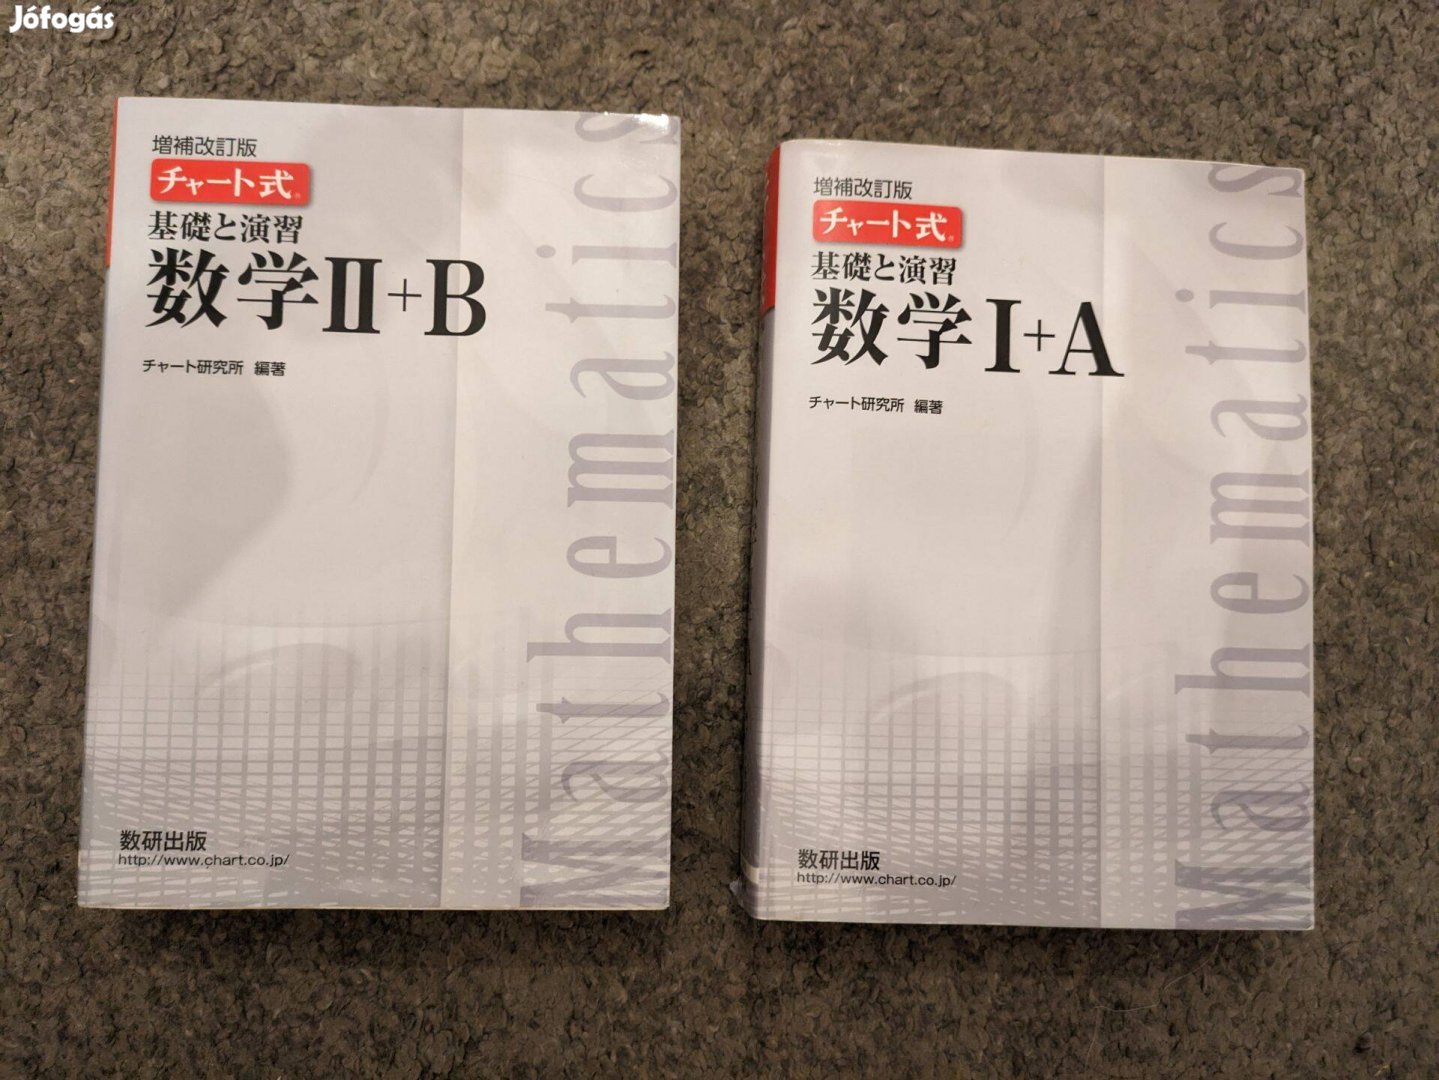 Japán nyelvű matematika könyvek